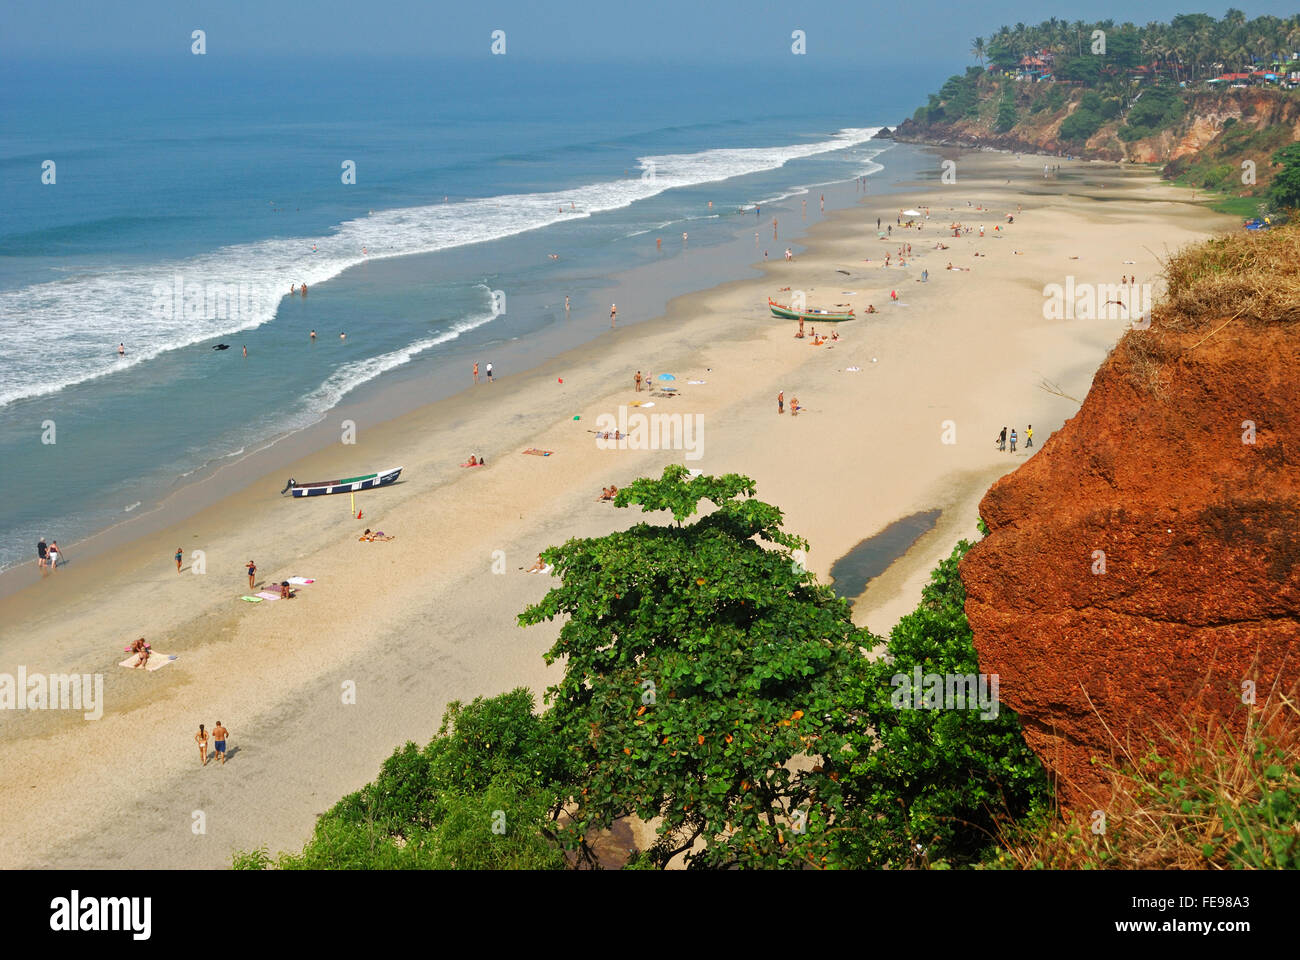 Varkala beach et falaise,Kerala, Inde.Aussi appelé papanasam beach ,c'est une destination touristique internationale près de Trivandrum Banque D'Images